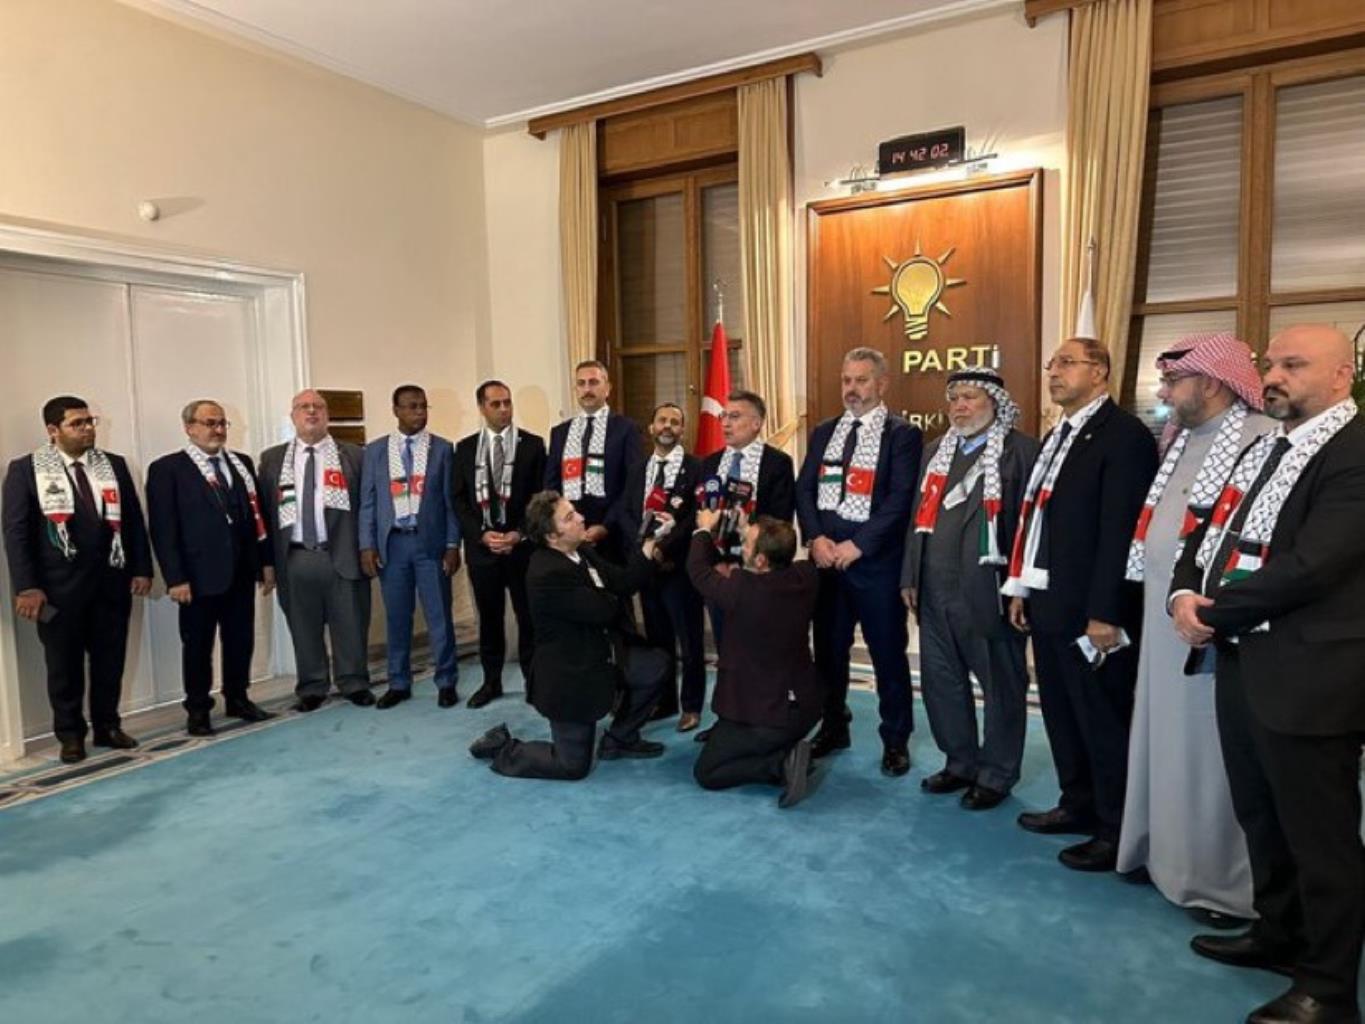 أسامة الشاهين ورابطة (برلمانيون لأجل القدس) يلتقون رؤساء كتل البرلمان التركي لتعزيز الجهود البرلمانية في إيقاف حرب الإبادة على الشعب الفلسطيني